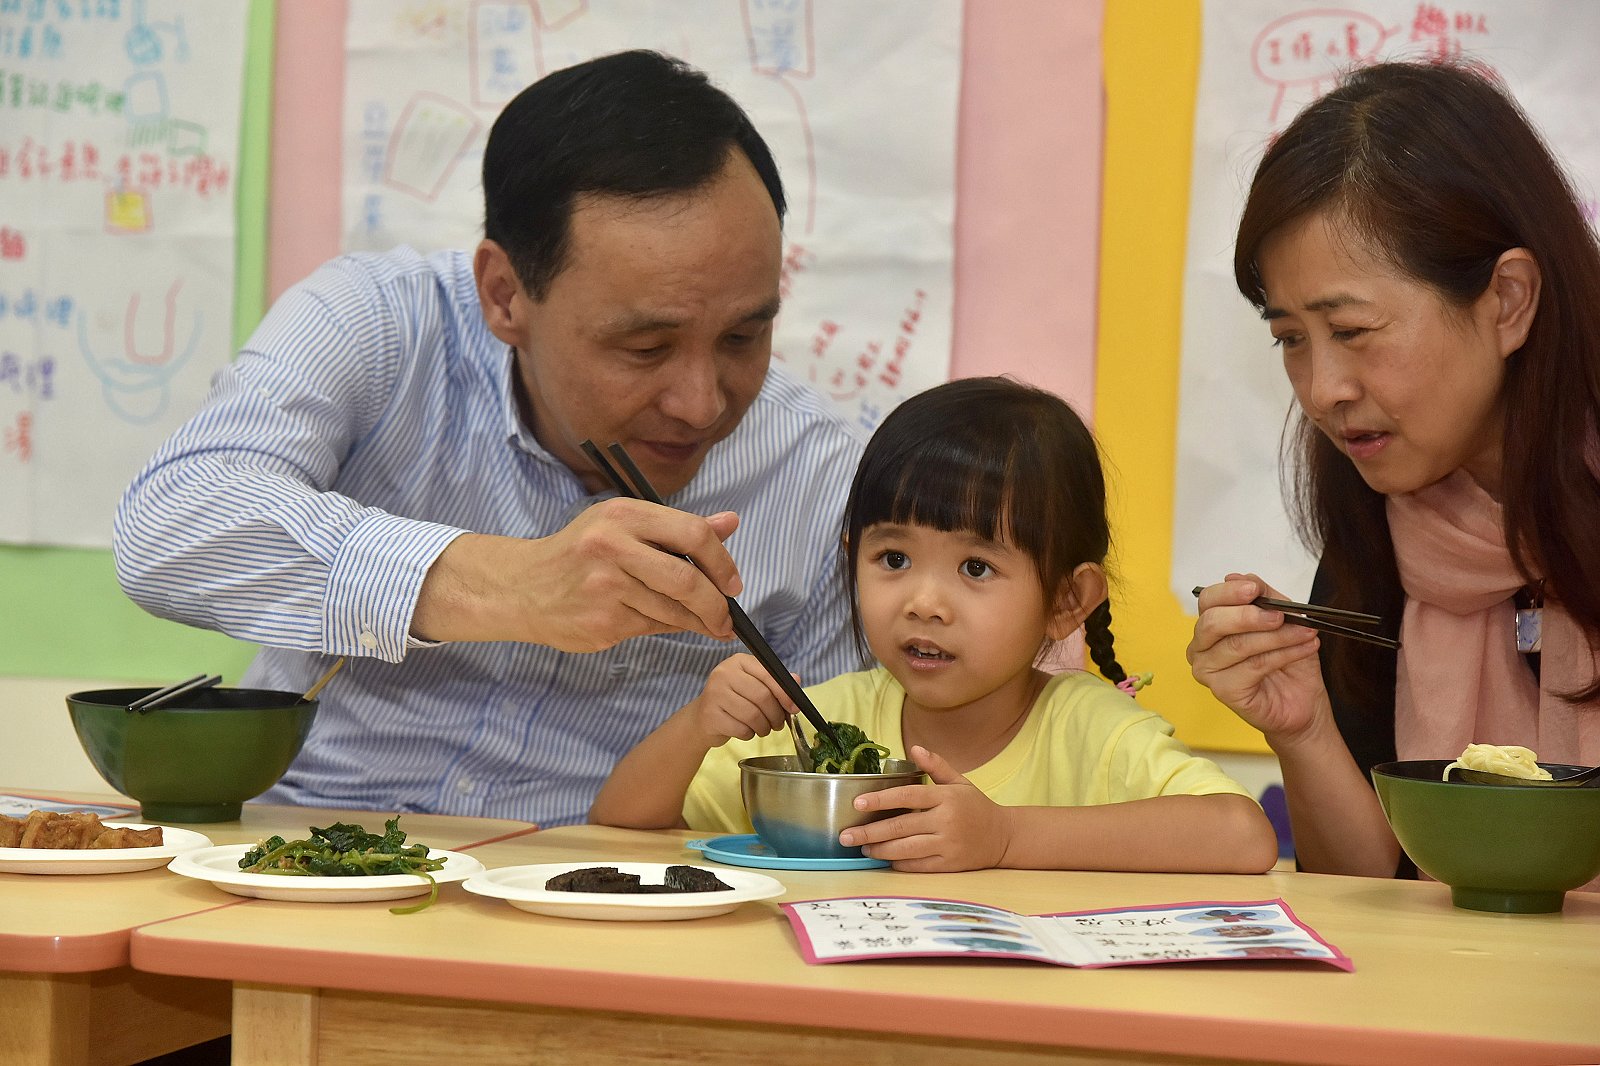 幼兒園每日食用一道有機蔬菜